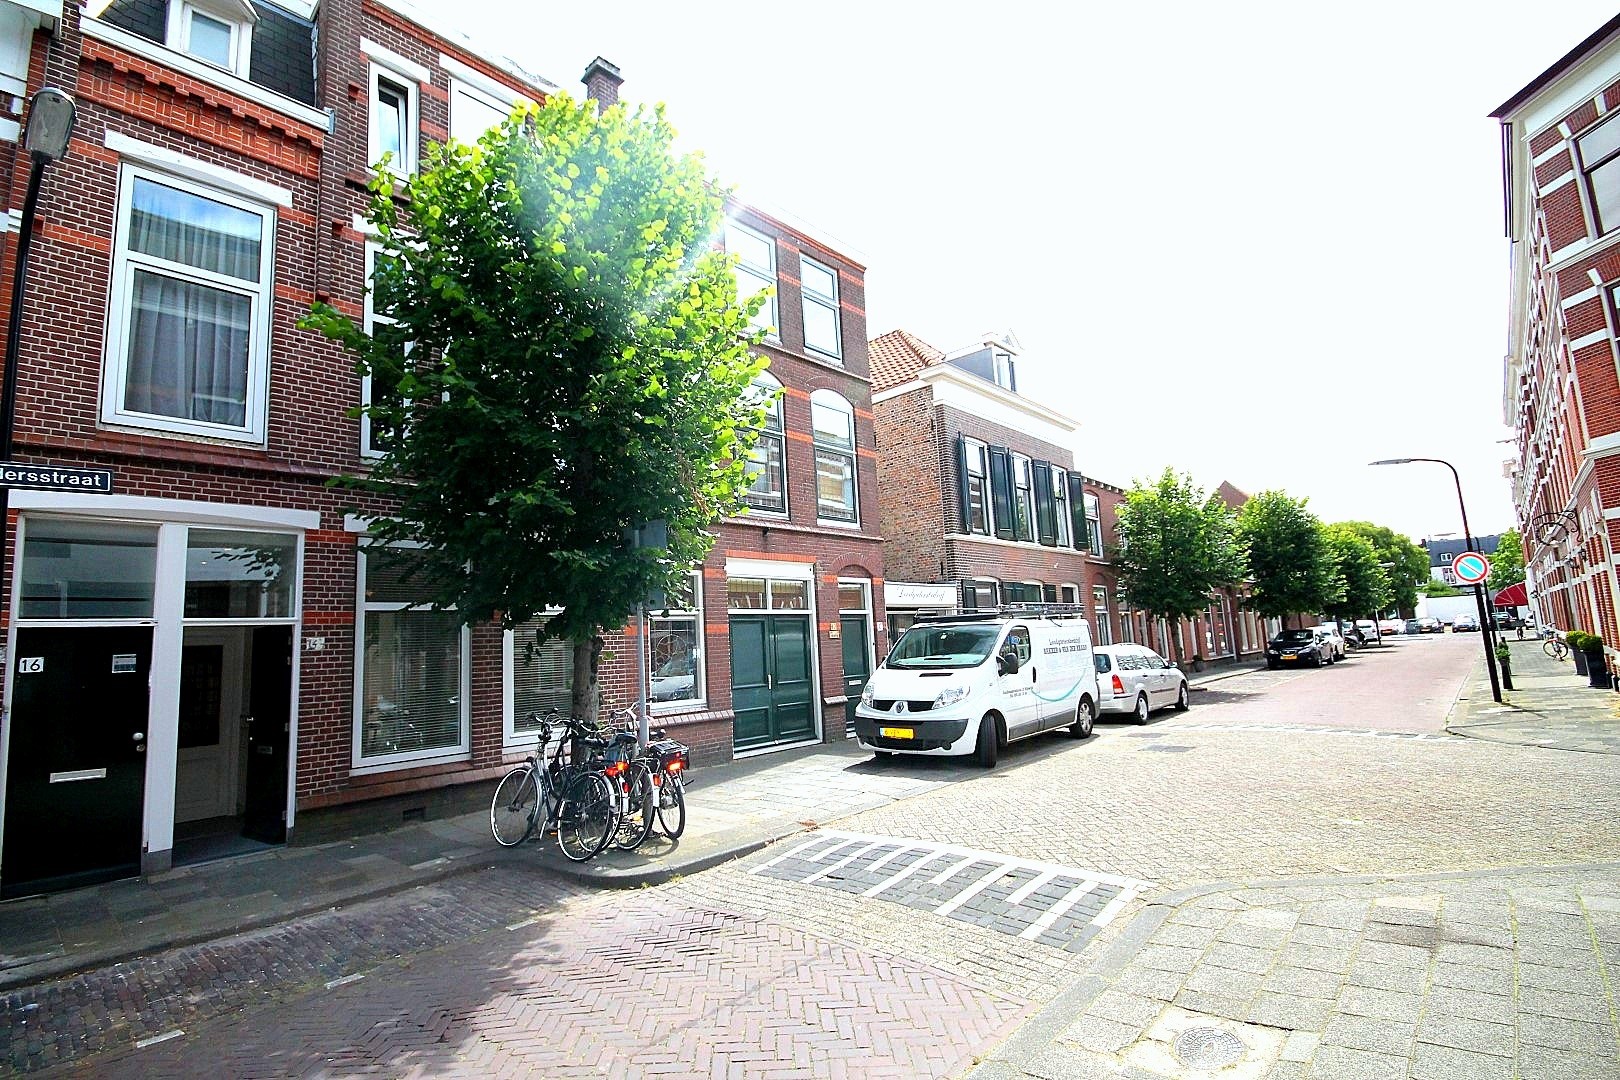 Bekijk foto 1/47 van apartment in Rijswijk